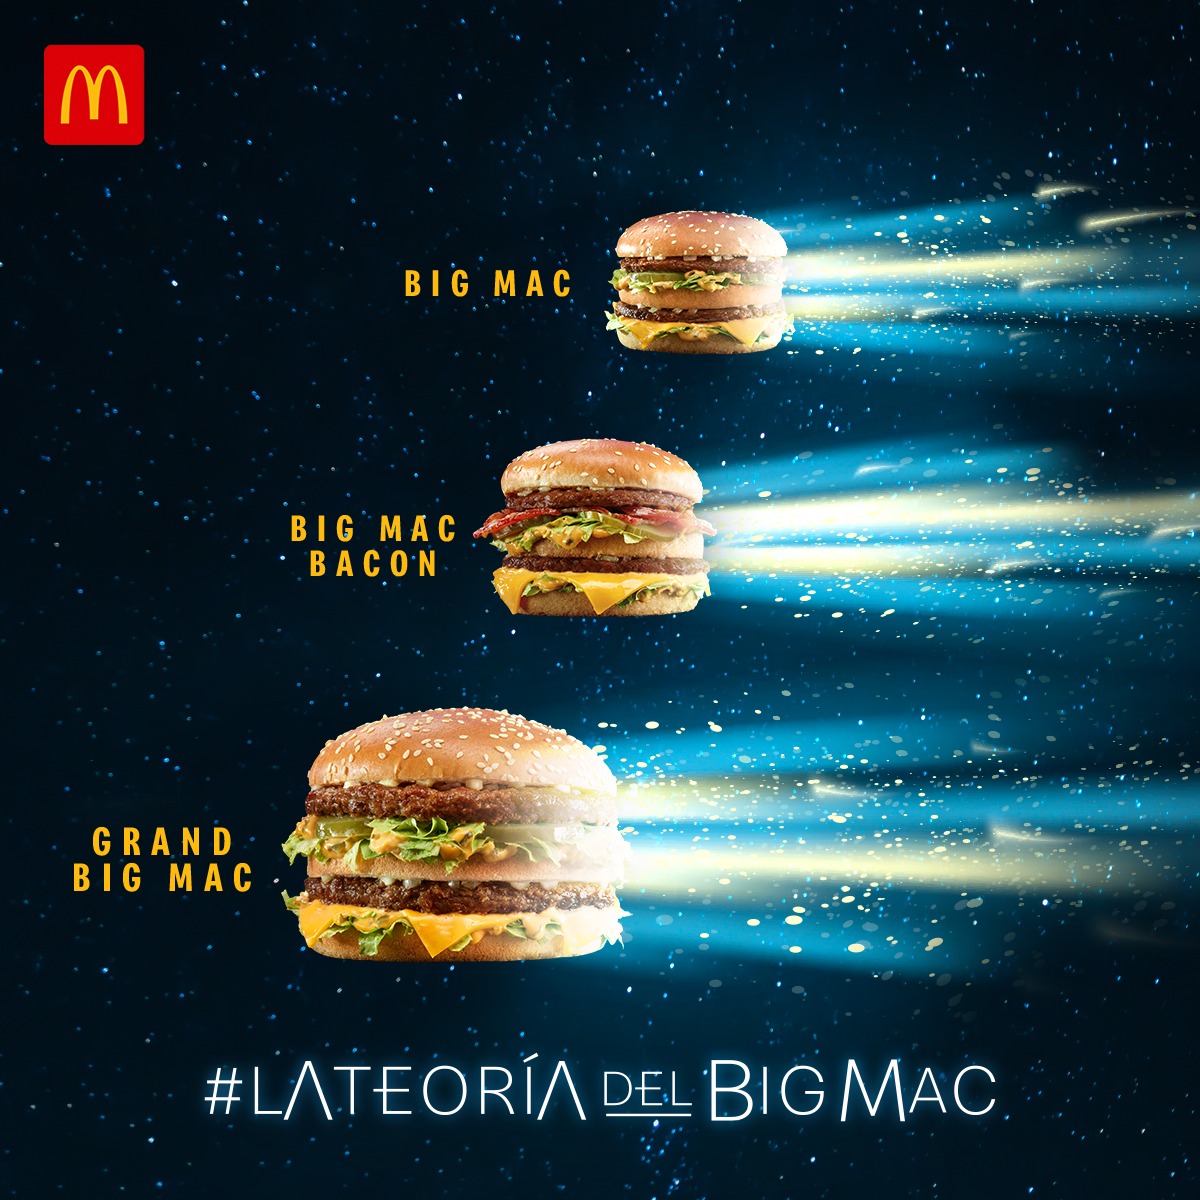 La-teor-a-del-Big-Mac.jpg